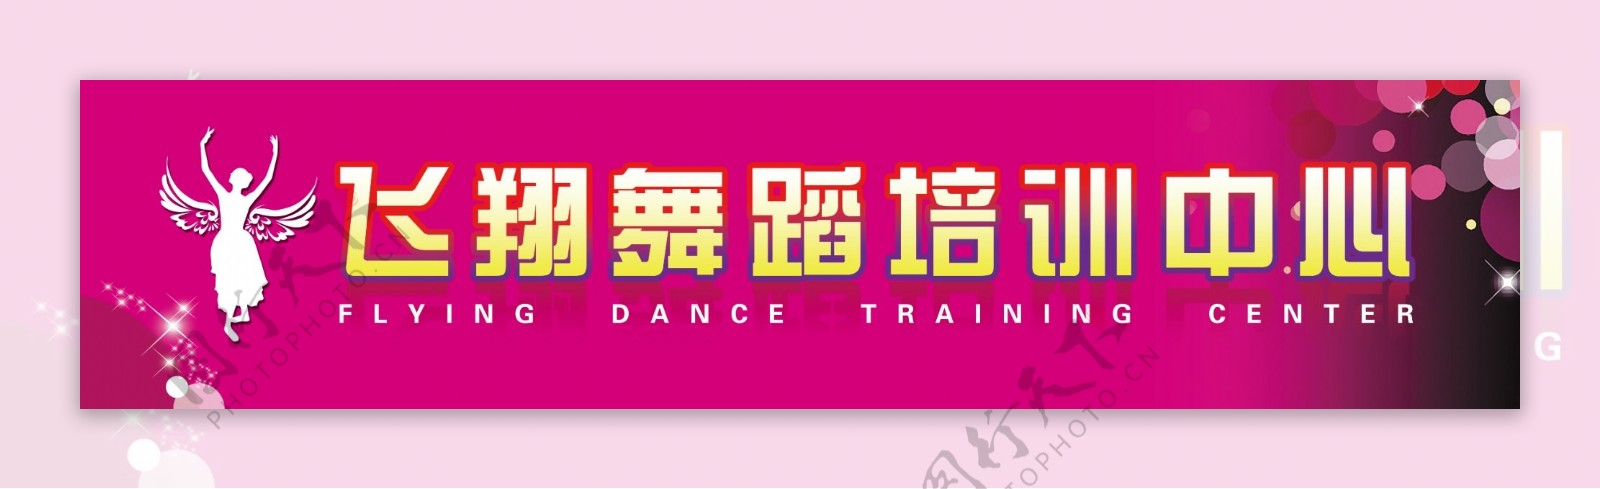 舞蹈培训中心门头招牌设计psd源文件